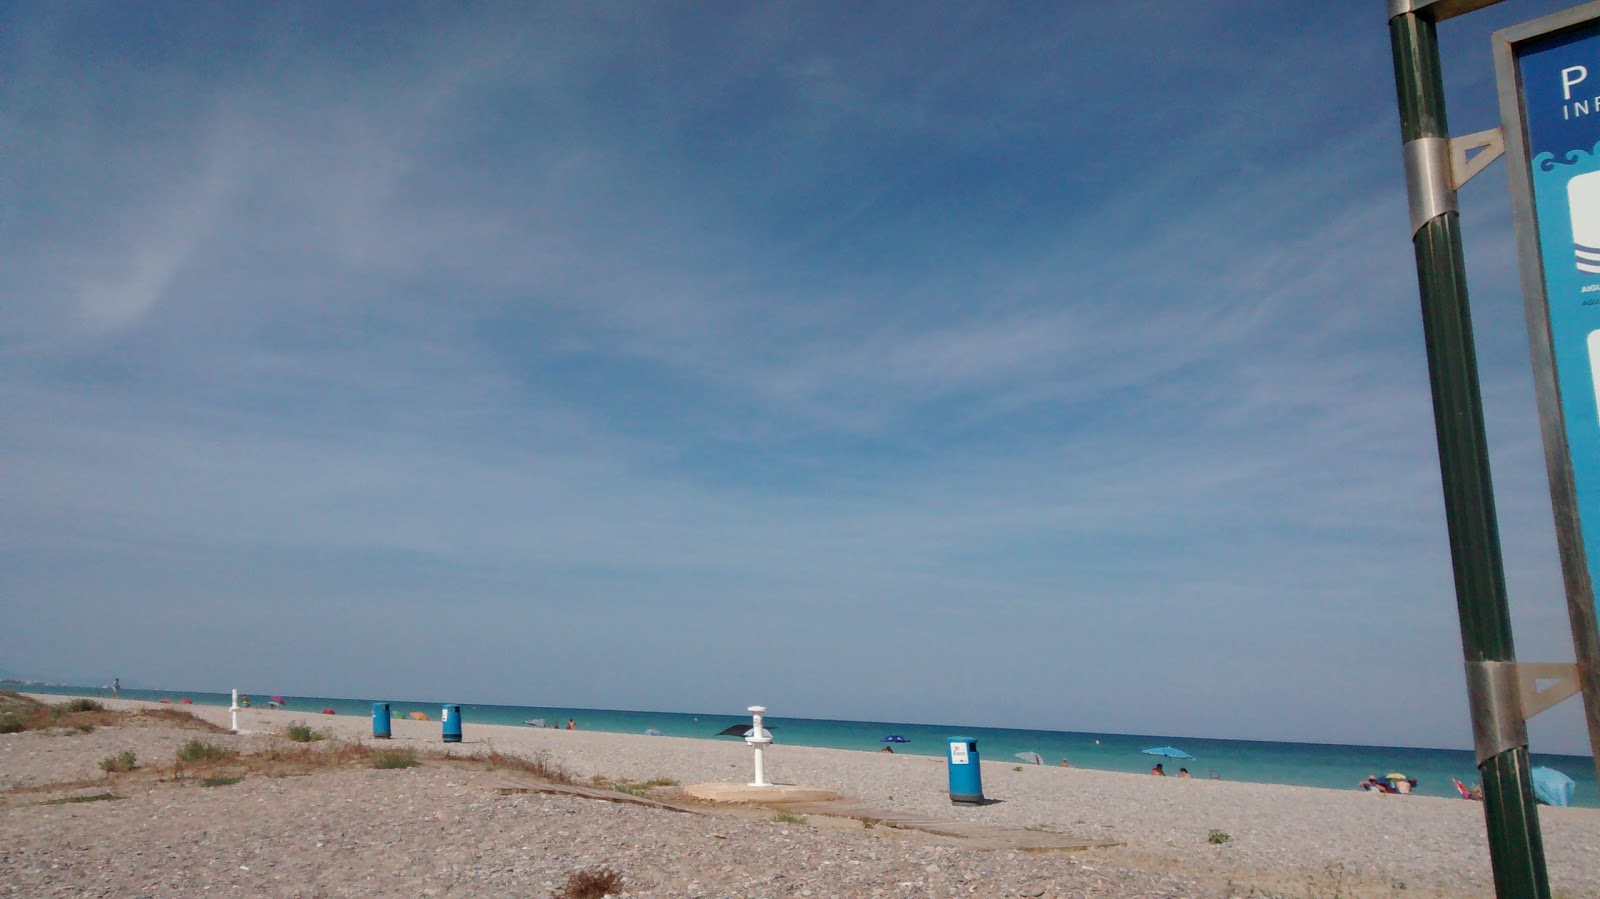 Malvarrosa Naturista'in fotoğrafı geniş plaj ile birlikte